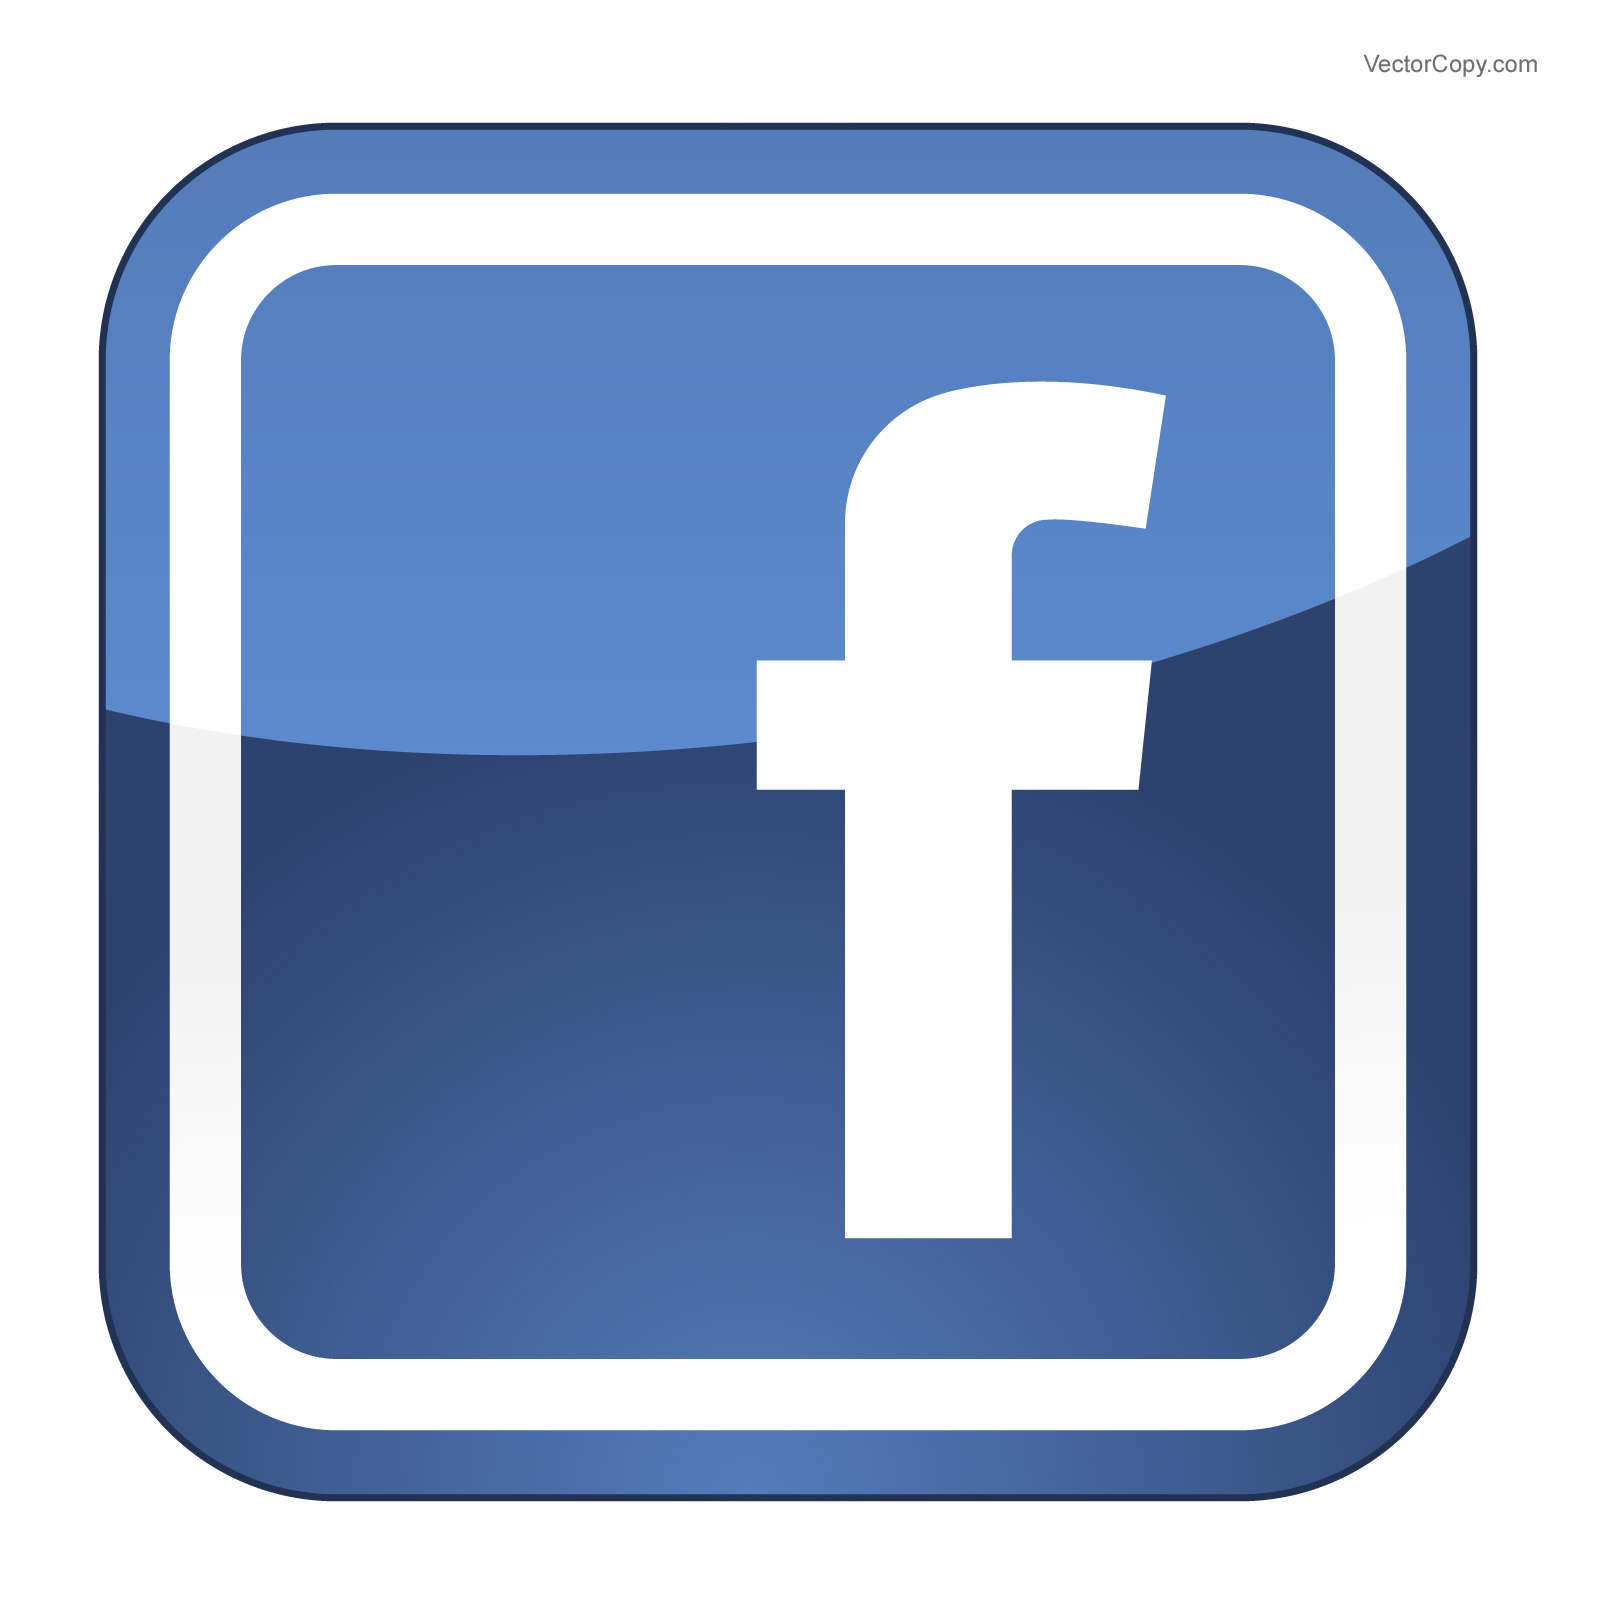 facebook logo vector | Logospike.com: Famous and Free Vector Logos